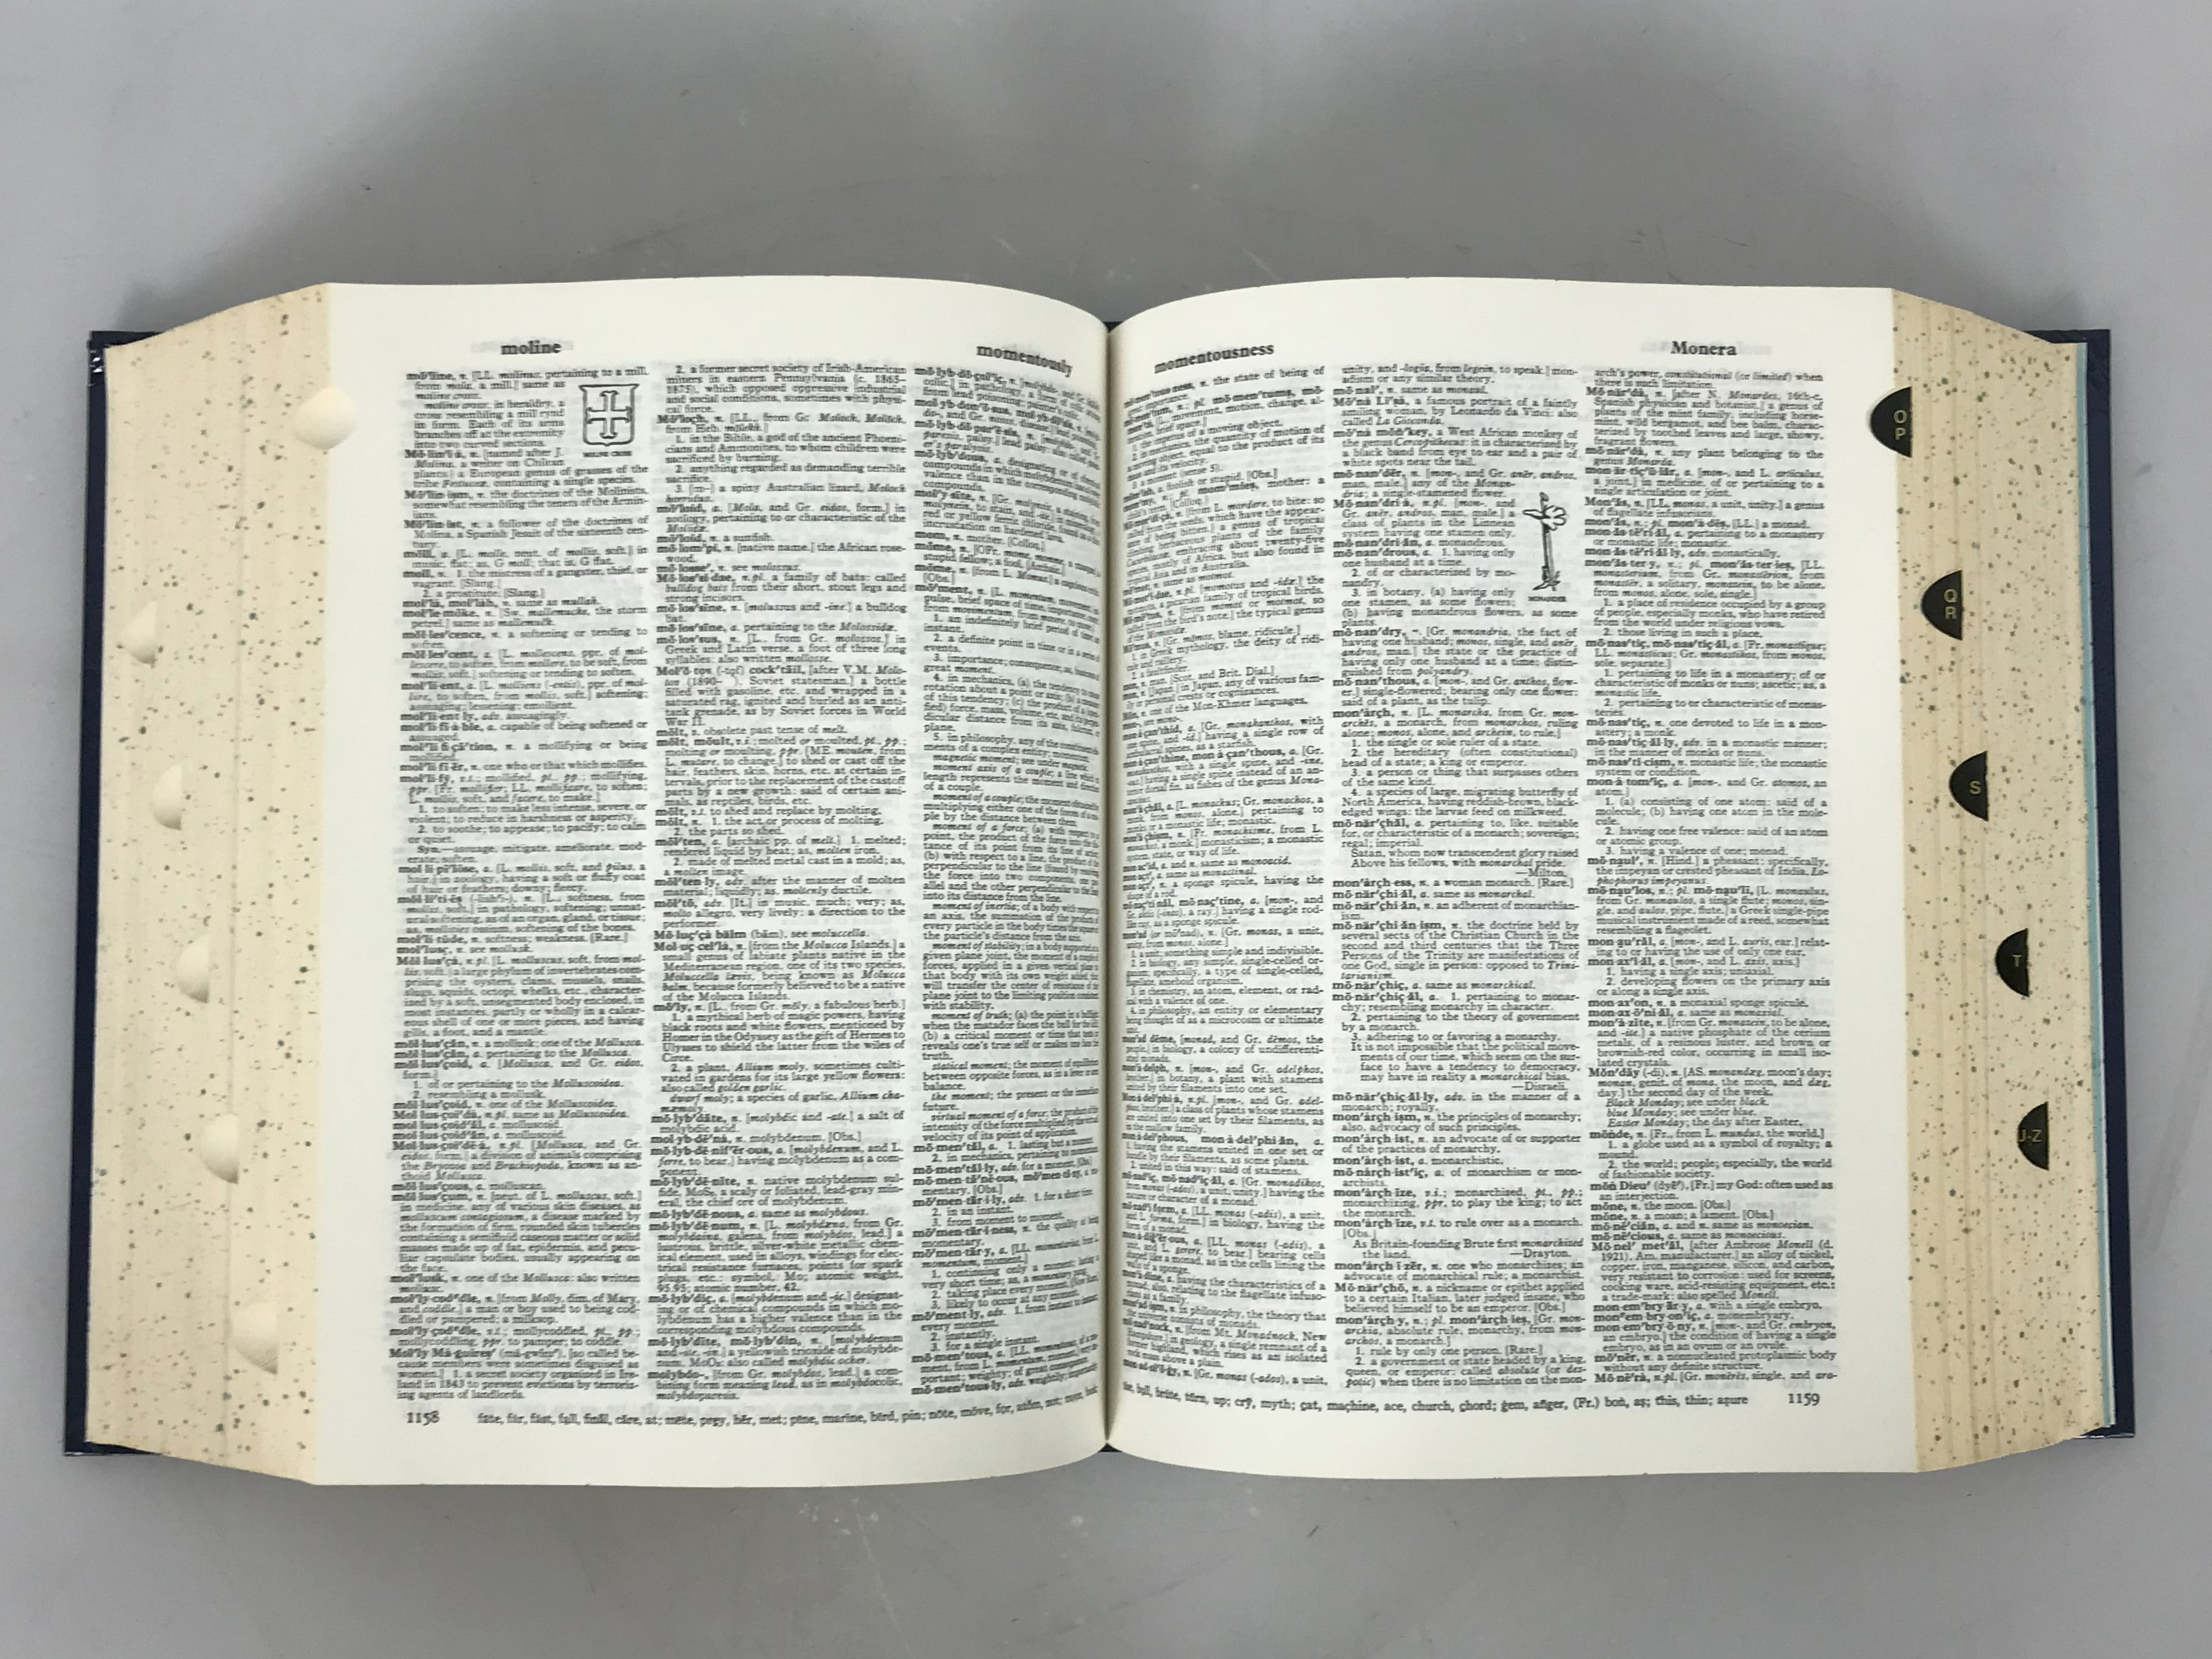 Webster's New Twentieth Century Dictionary Unabridged 2nd Edition Deluxe Color